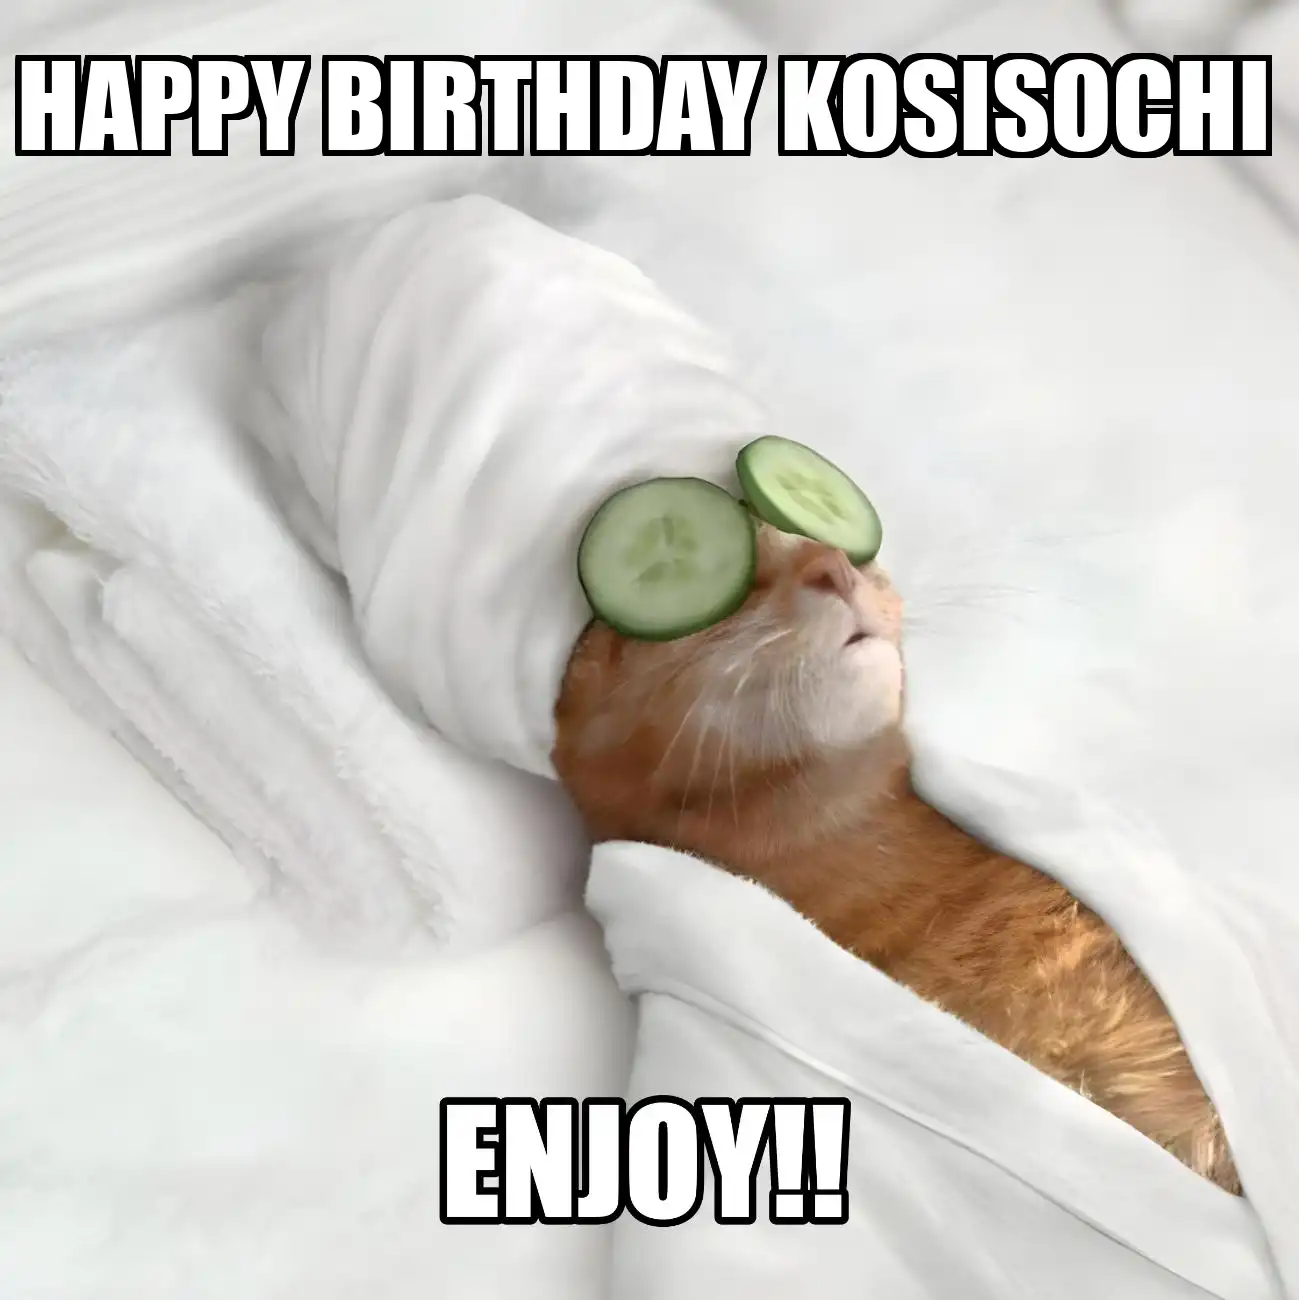 Happy Birthday Kosisochi Enjoy Cat Meme